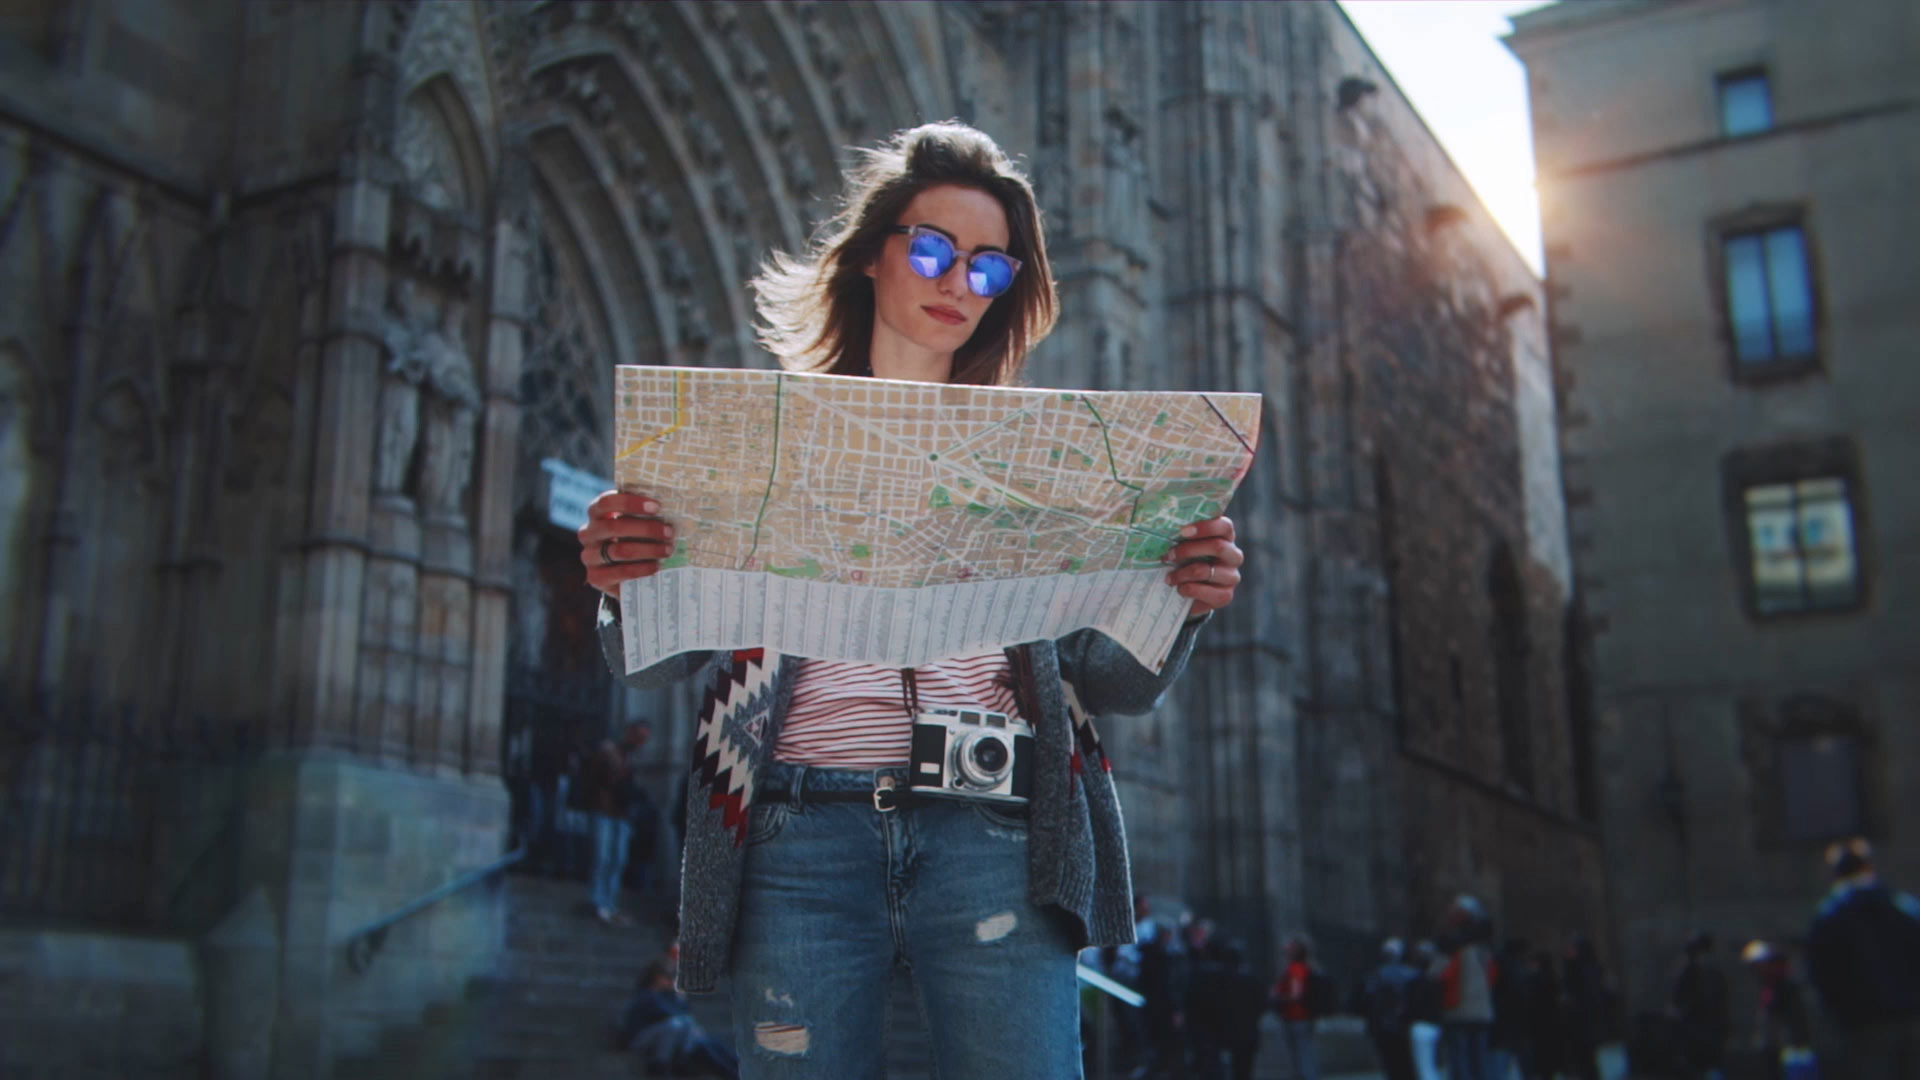 Turista em Barcelona a olhar para o mapa com a Catedral de Barcelona em fundo.